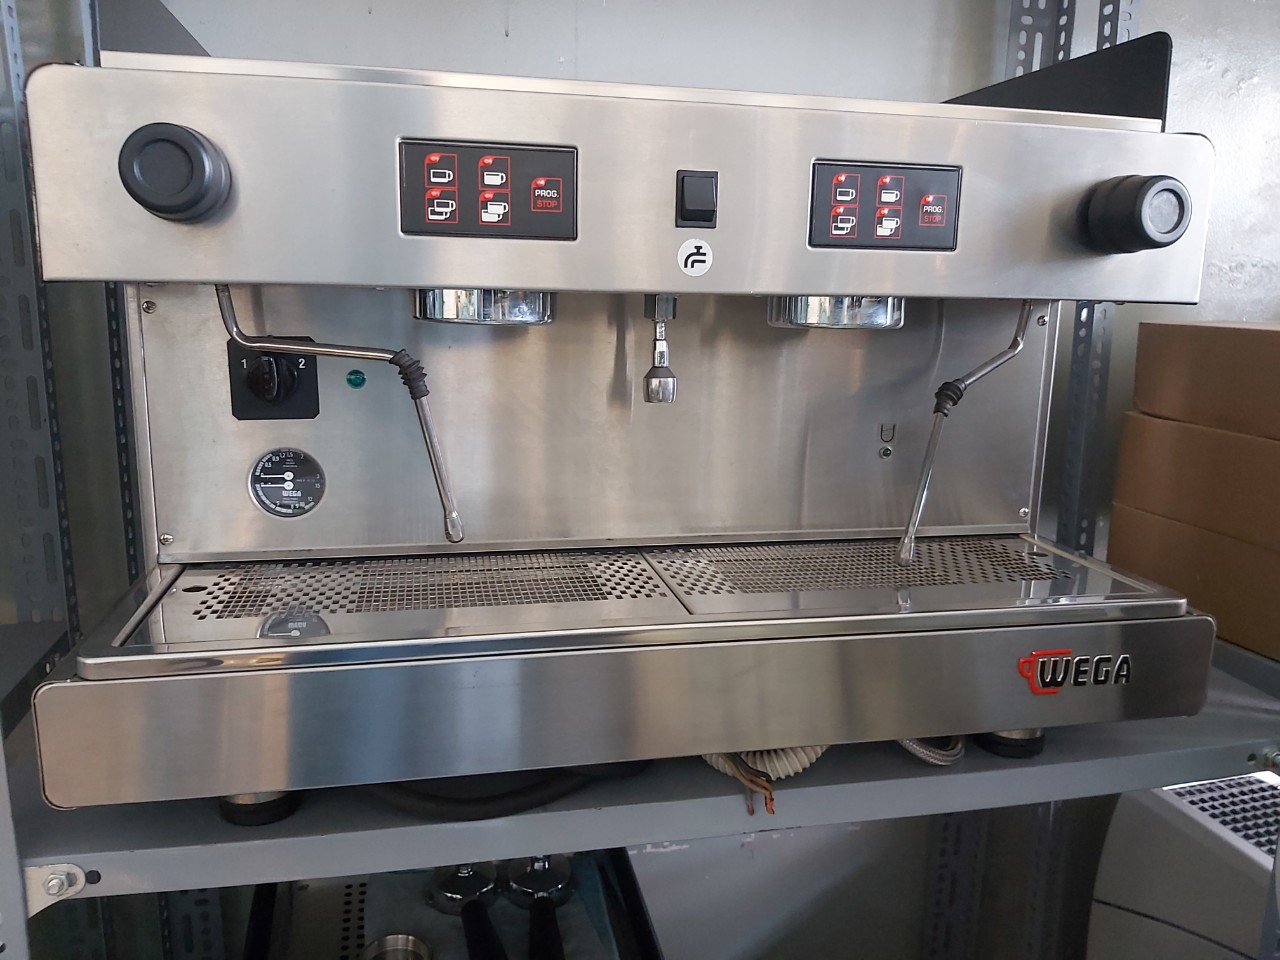 Cần bán máy pha cà phê cũ Wega Luna nhập khẩu Ý